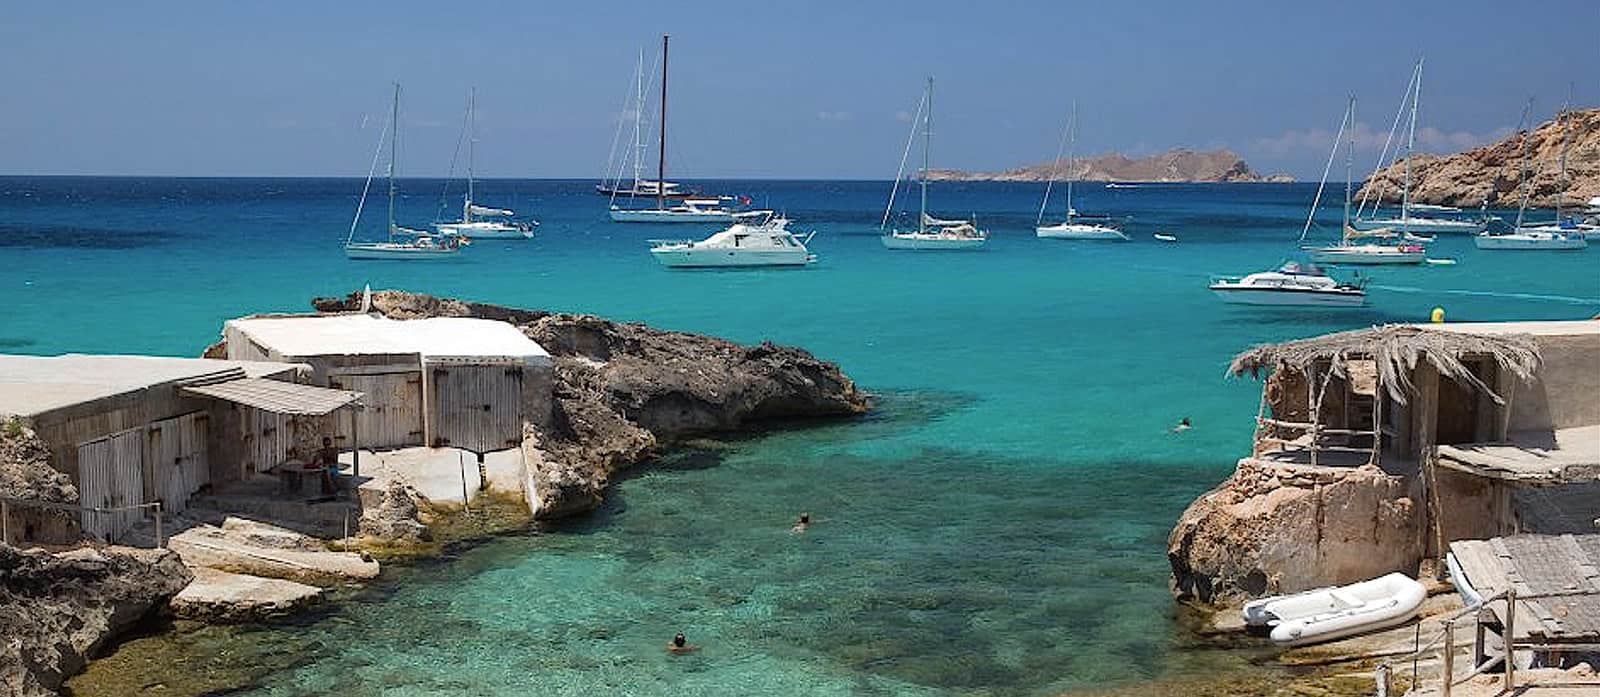 Cala Tarida - part of our favorite catamaran itinerary around Ibiza